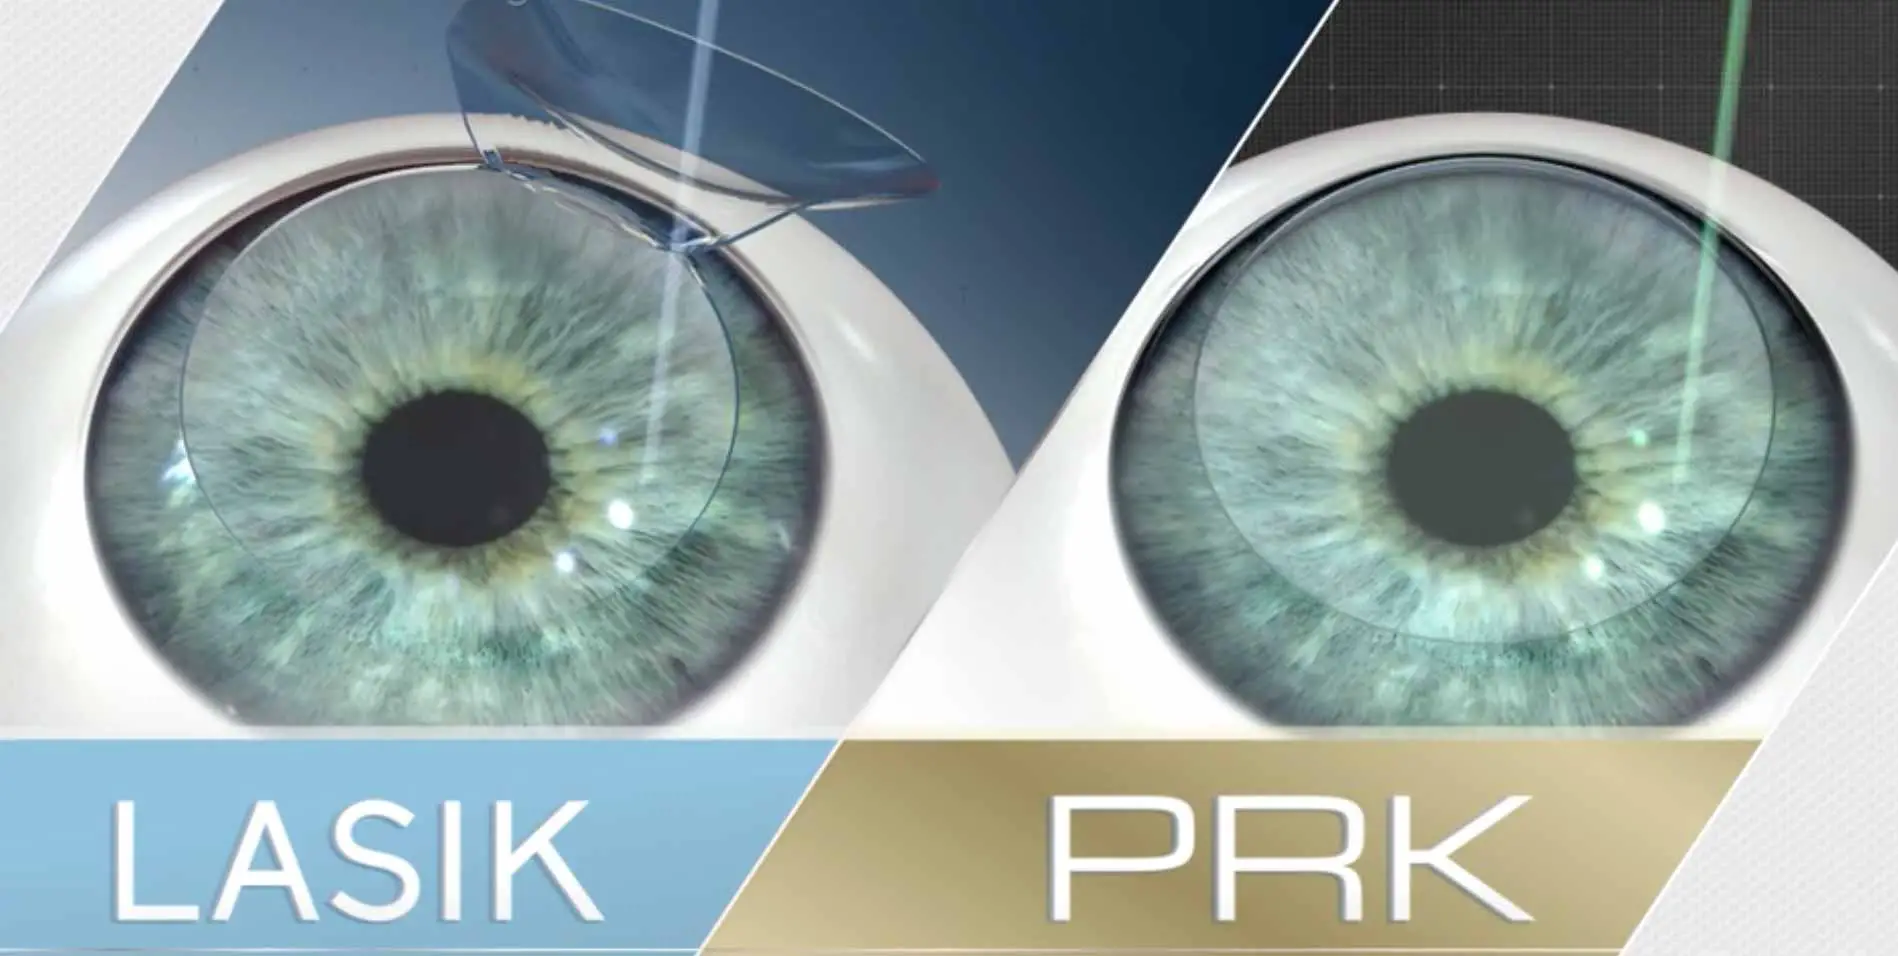 prk-vs-lasik